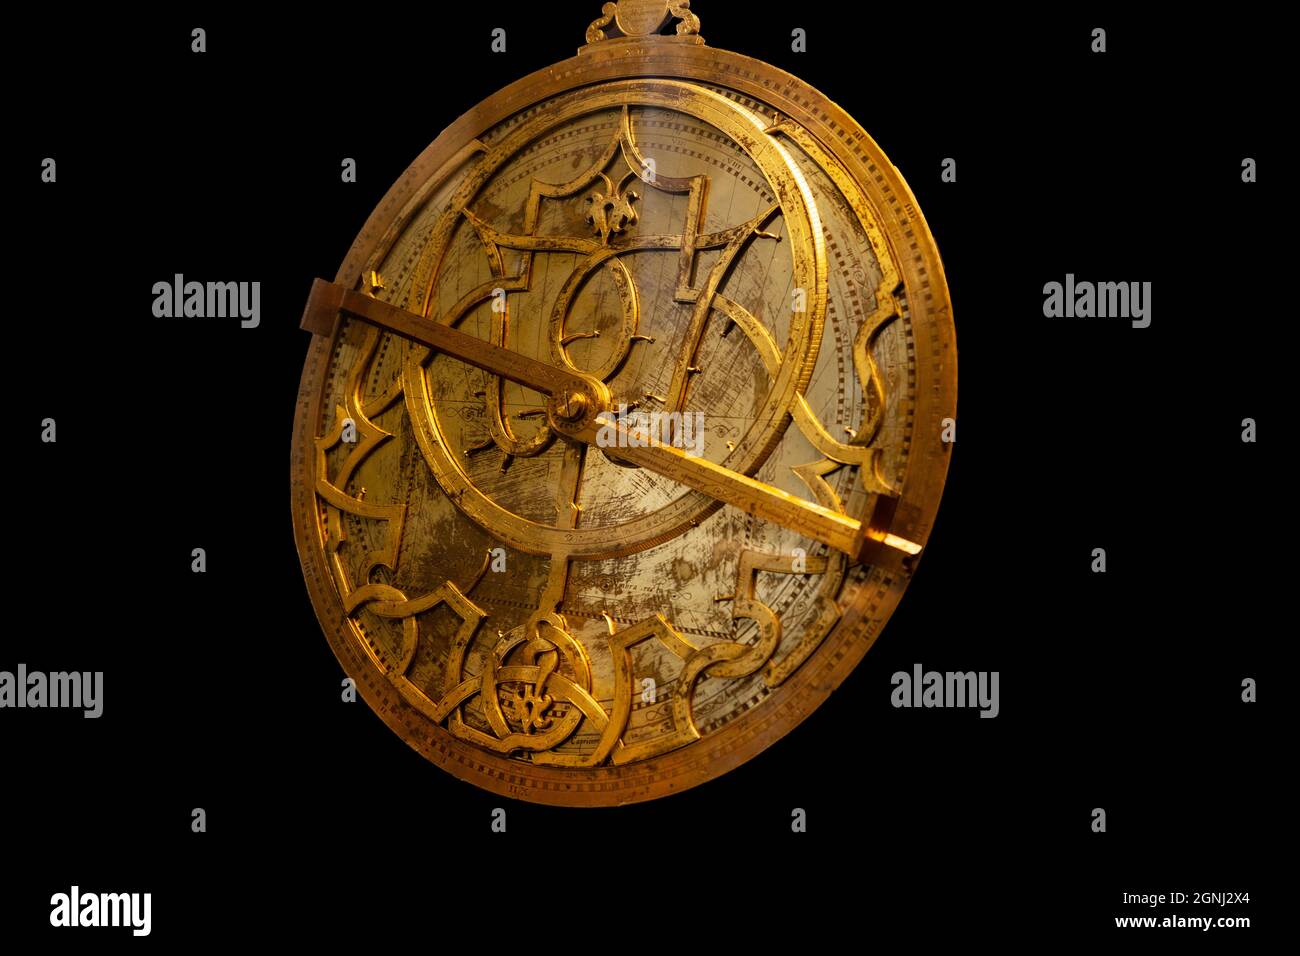 Astrolabe, un instrument utilisé pour faire des mesures astronomiques, typiquement des altitudes des corps célestes, et dans la navigation pour calculer la latitude Banque D'Images